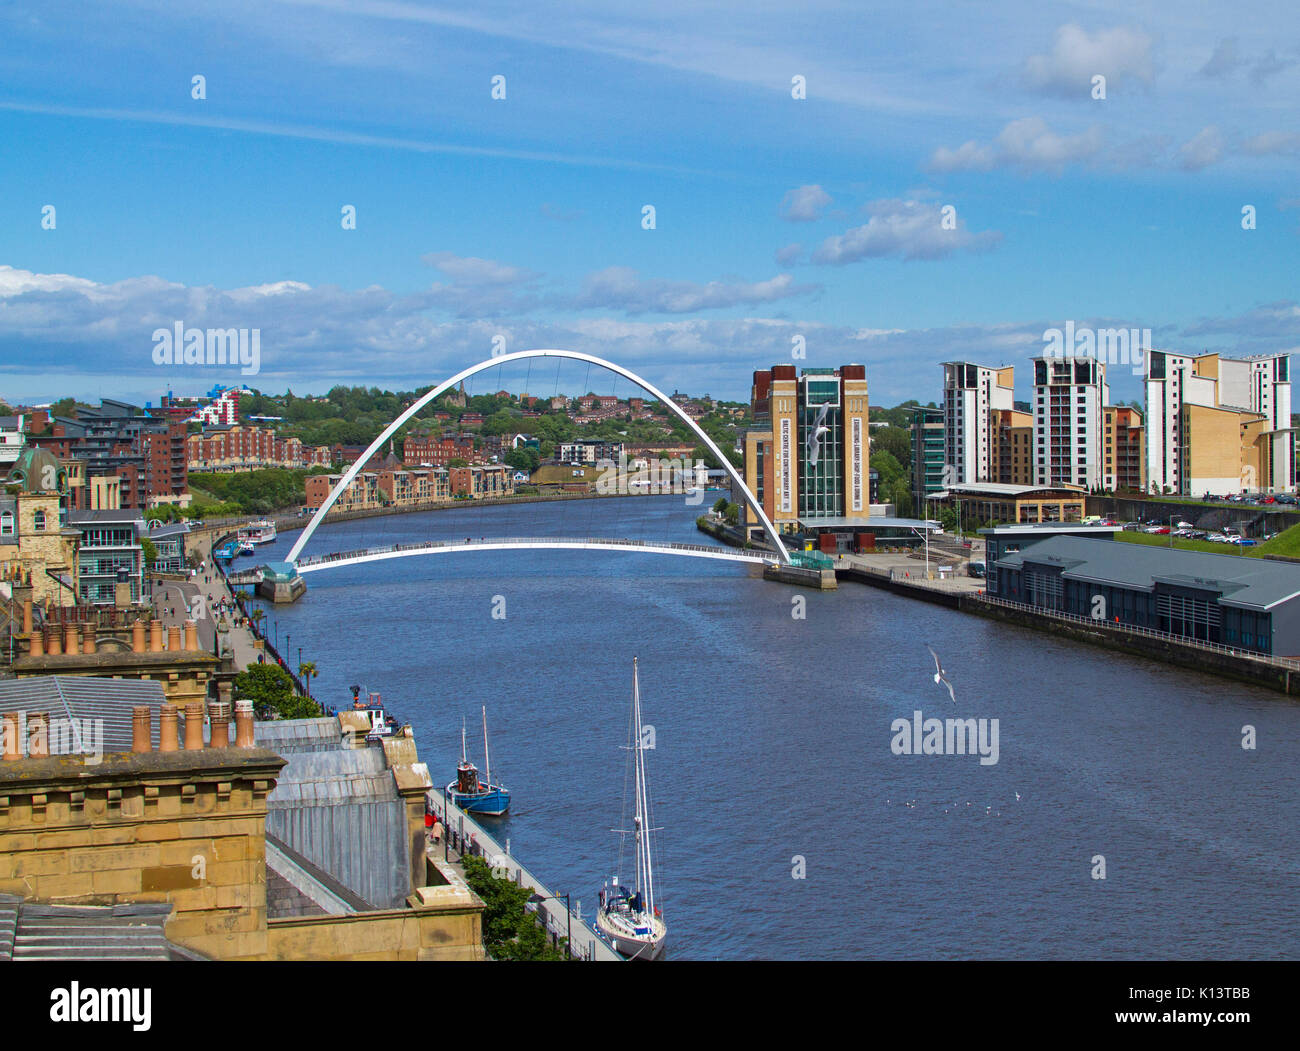 Gateshead Millennium Bridge, kippen Fußgängerbrücke über den Fluss Tyne in Newcastle-upon-Tyne mit Gebäuden der Stadt in der Nähe unter blauem Himmel Stockfoto